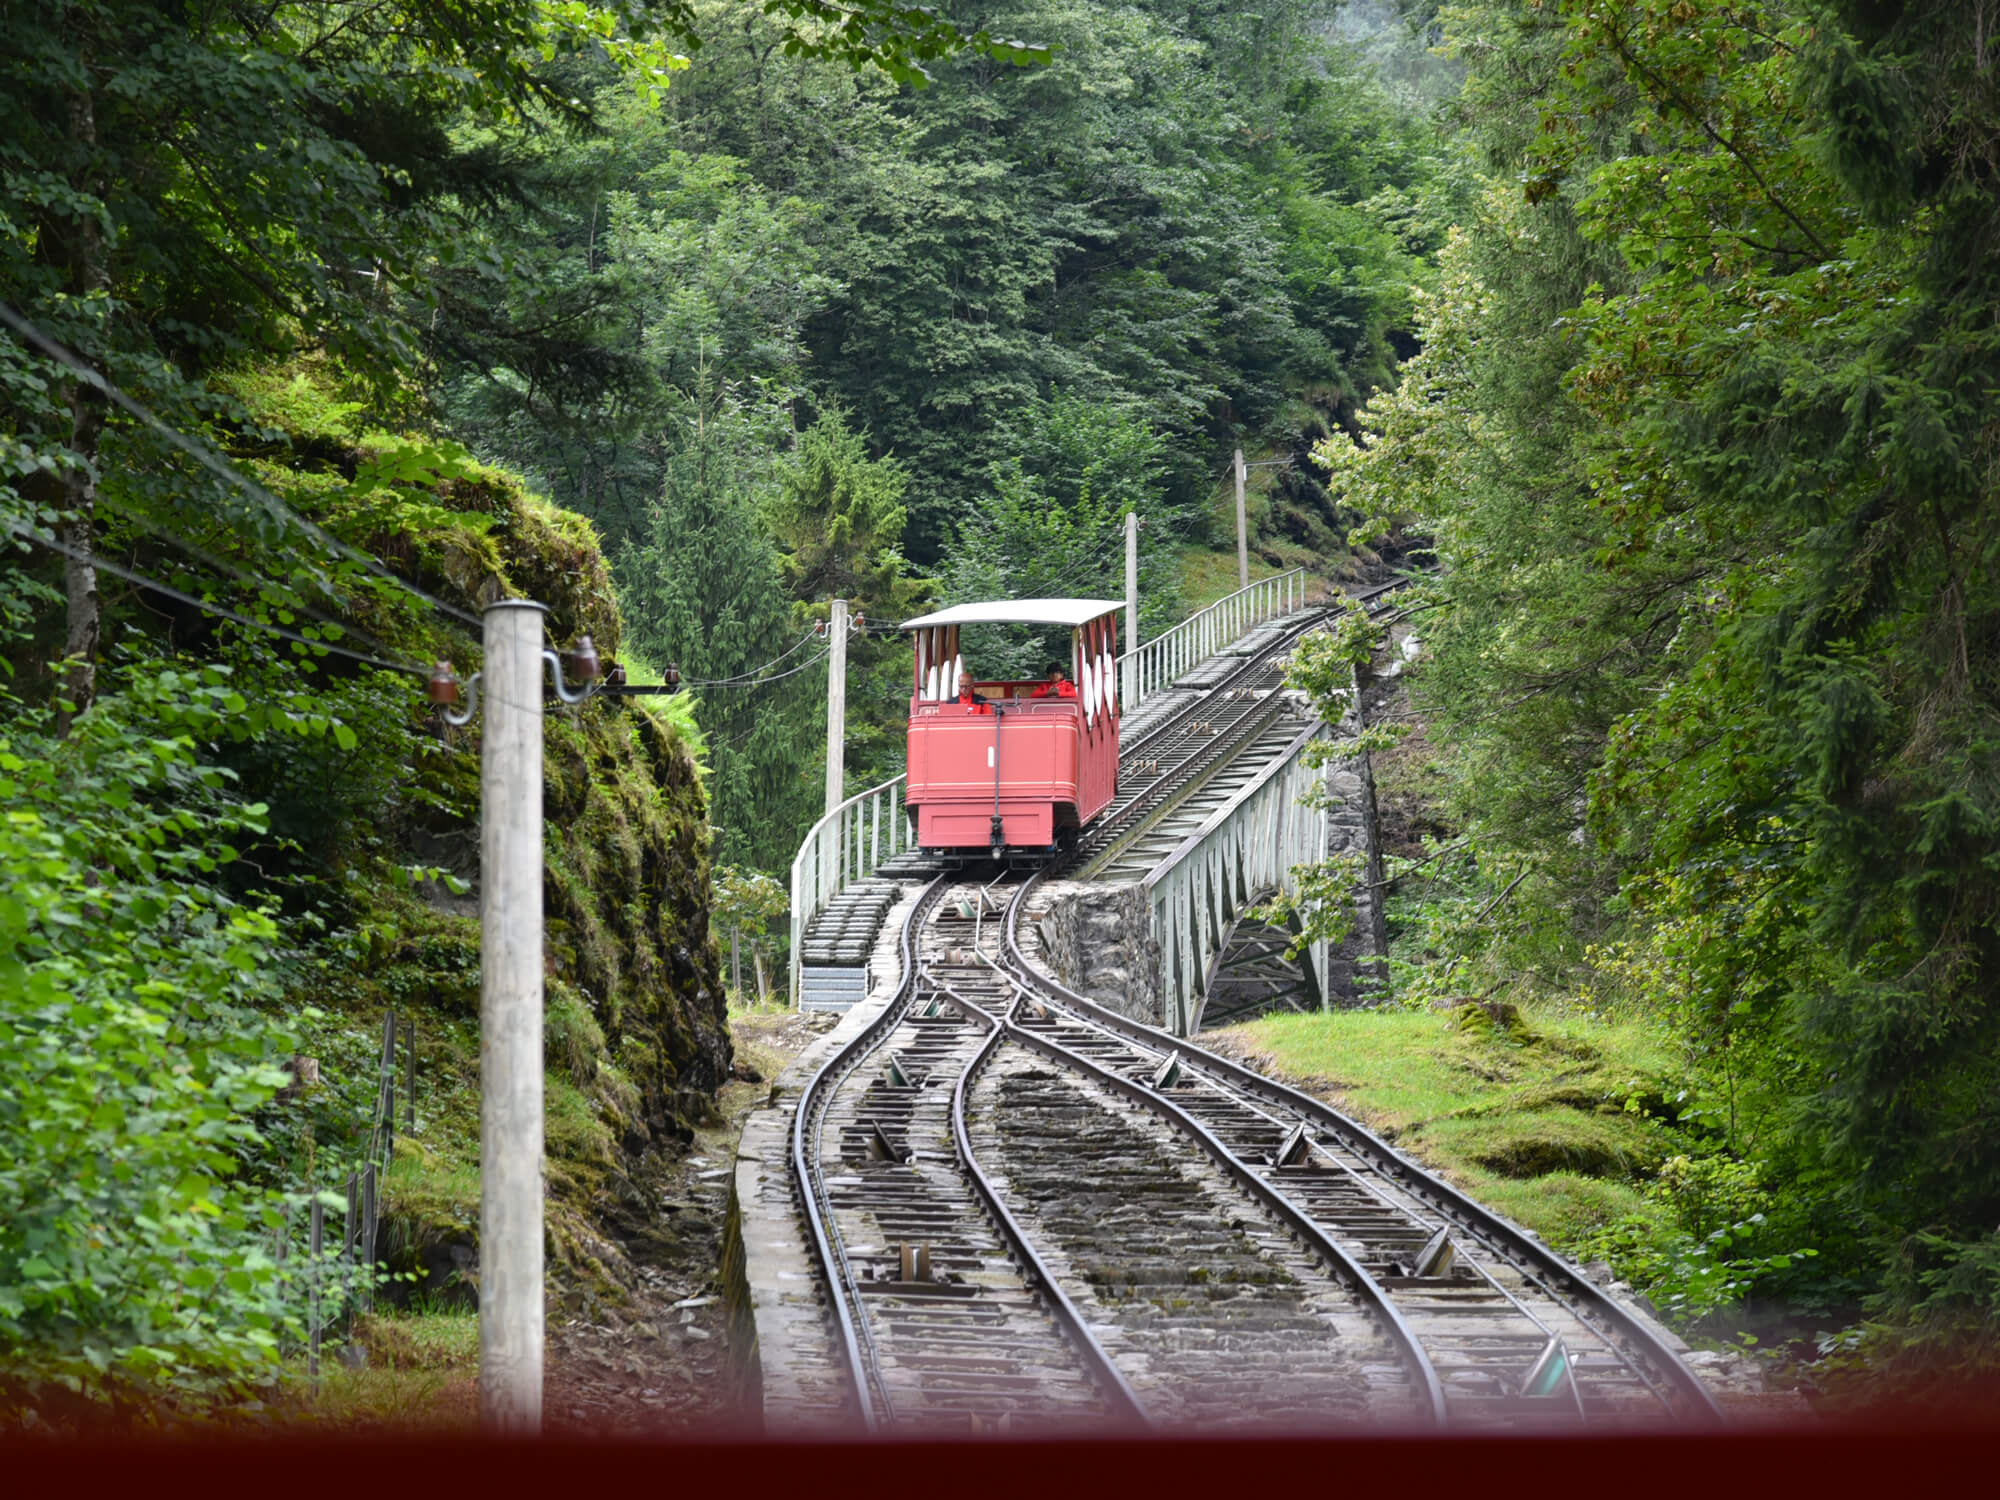 Reichenbach Falls Railway in Meiringen, Switzerland